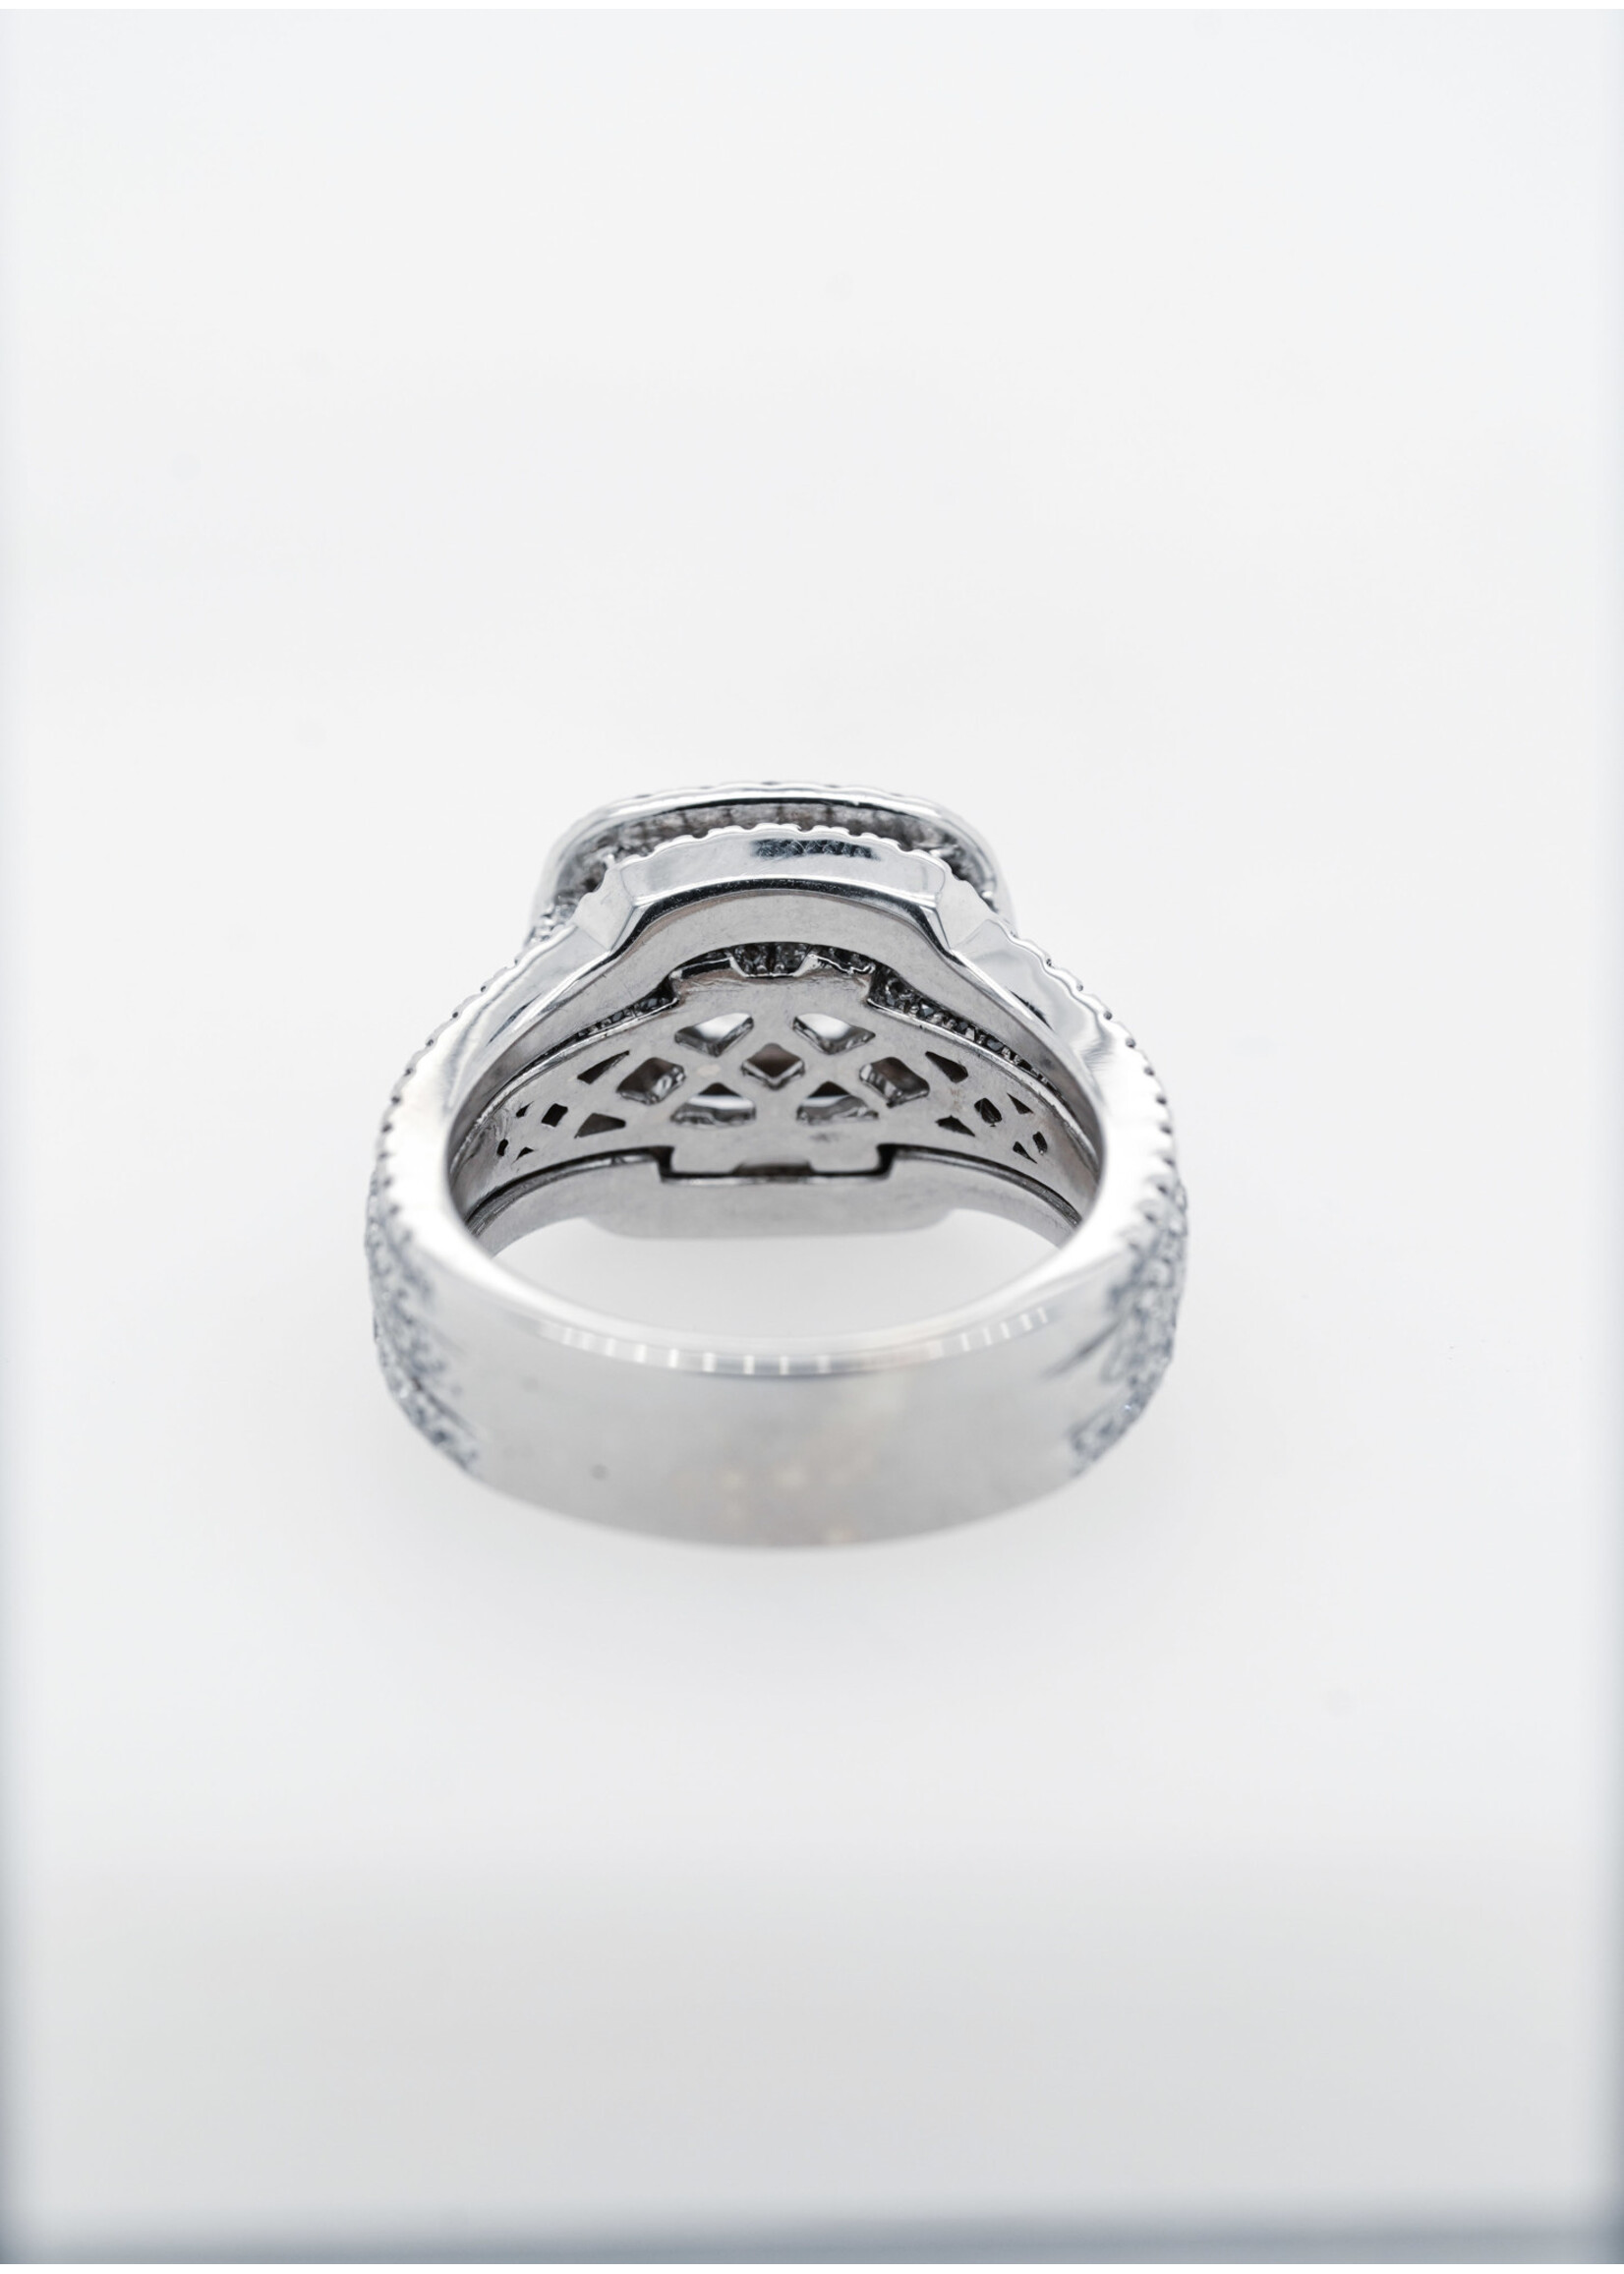 14KW 9.06g 2.40ctw (.72ctr) I/I1 Princess Cut Neil Lane Double Halo Engagement Ring (size 5.25)